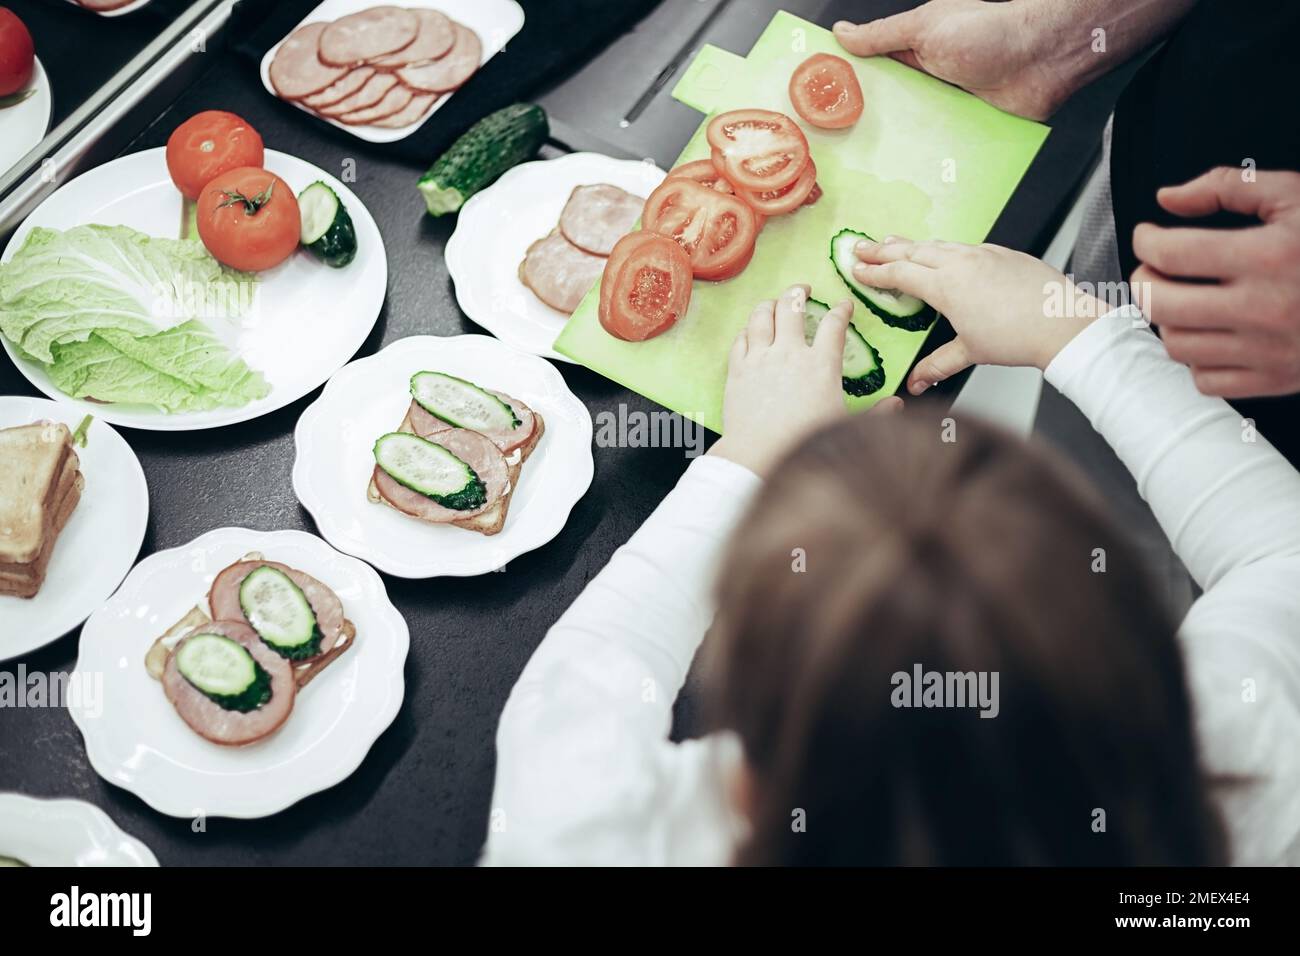 Vue de dessus du père et de la fille cuisine petit déjeuner. Sandwiches avec légumes, bacon et pain sur table sombre Banque D'Images